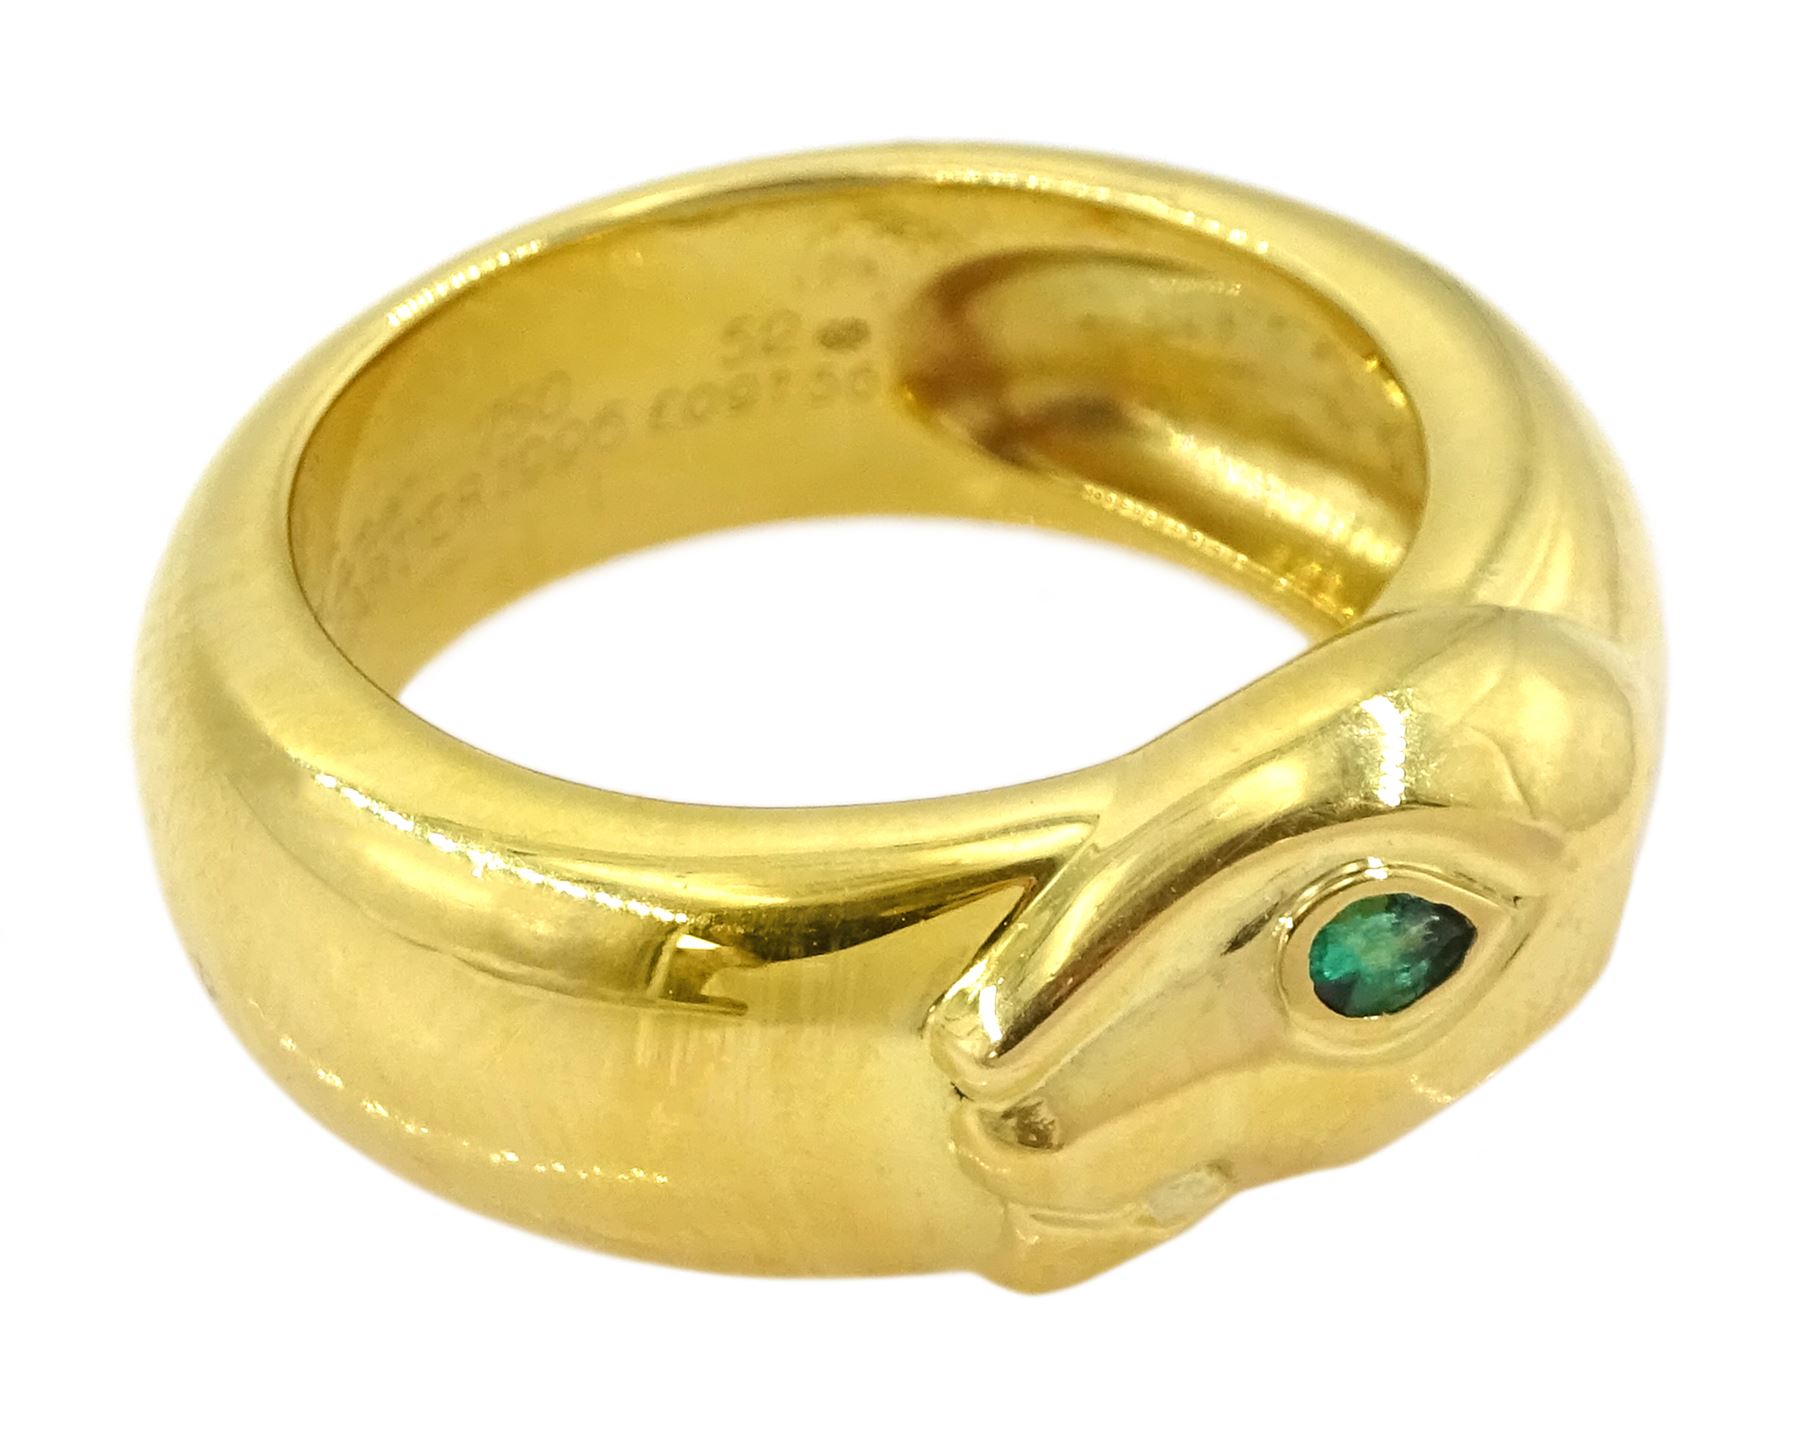 Cartier Panthere 18ct gold tsavorite garnet ring - Image 5 of 10